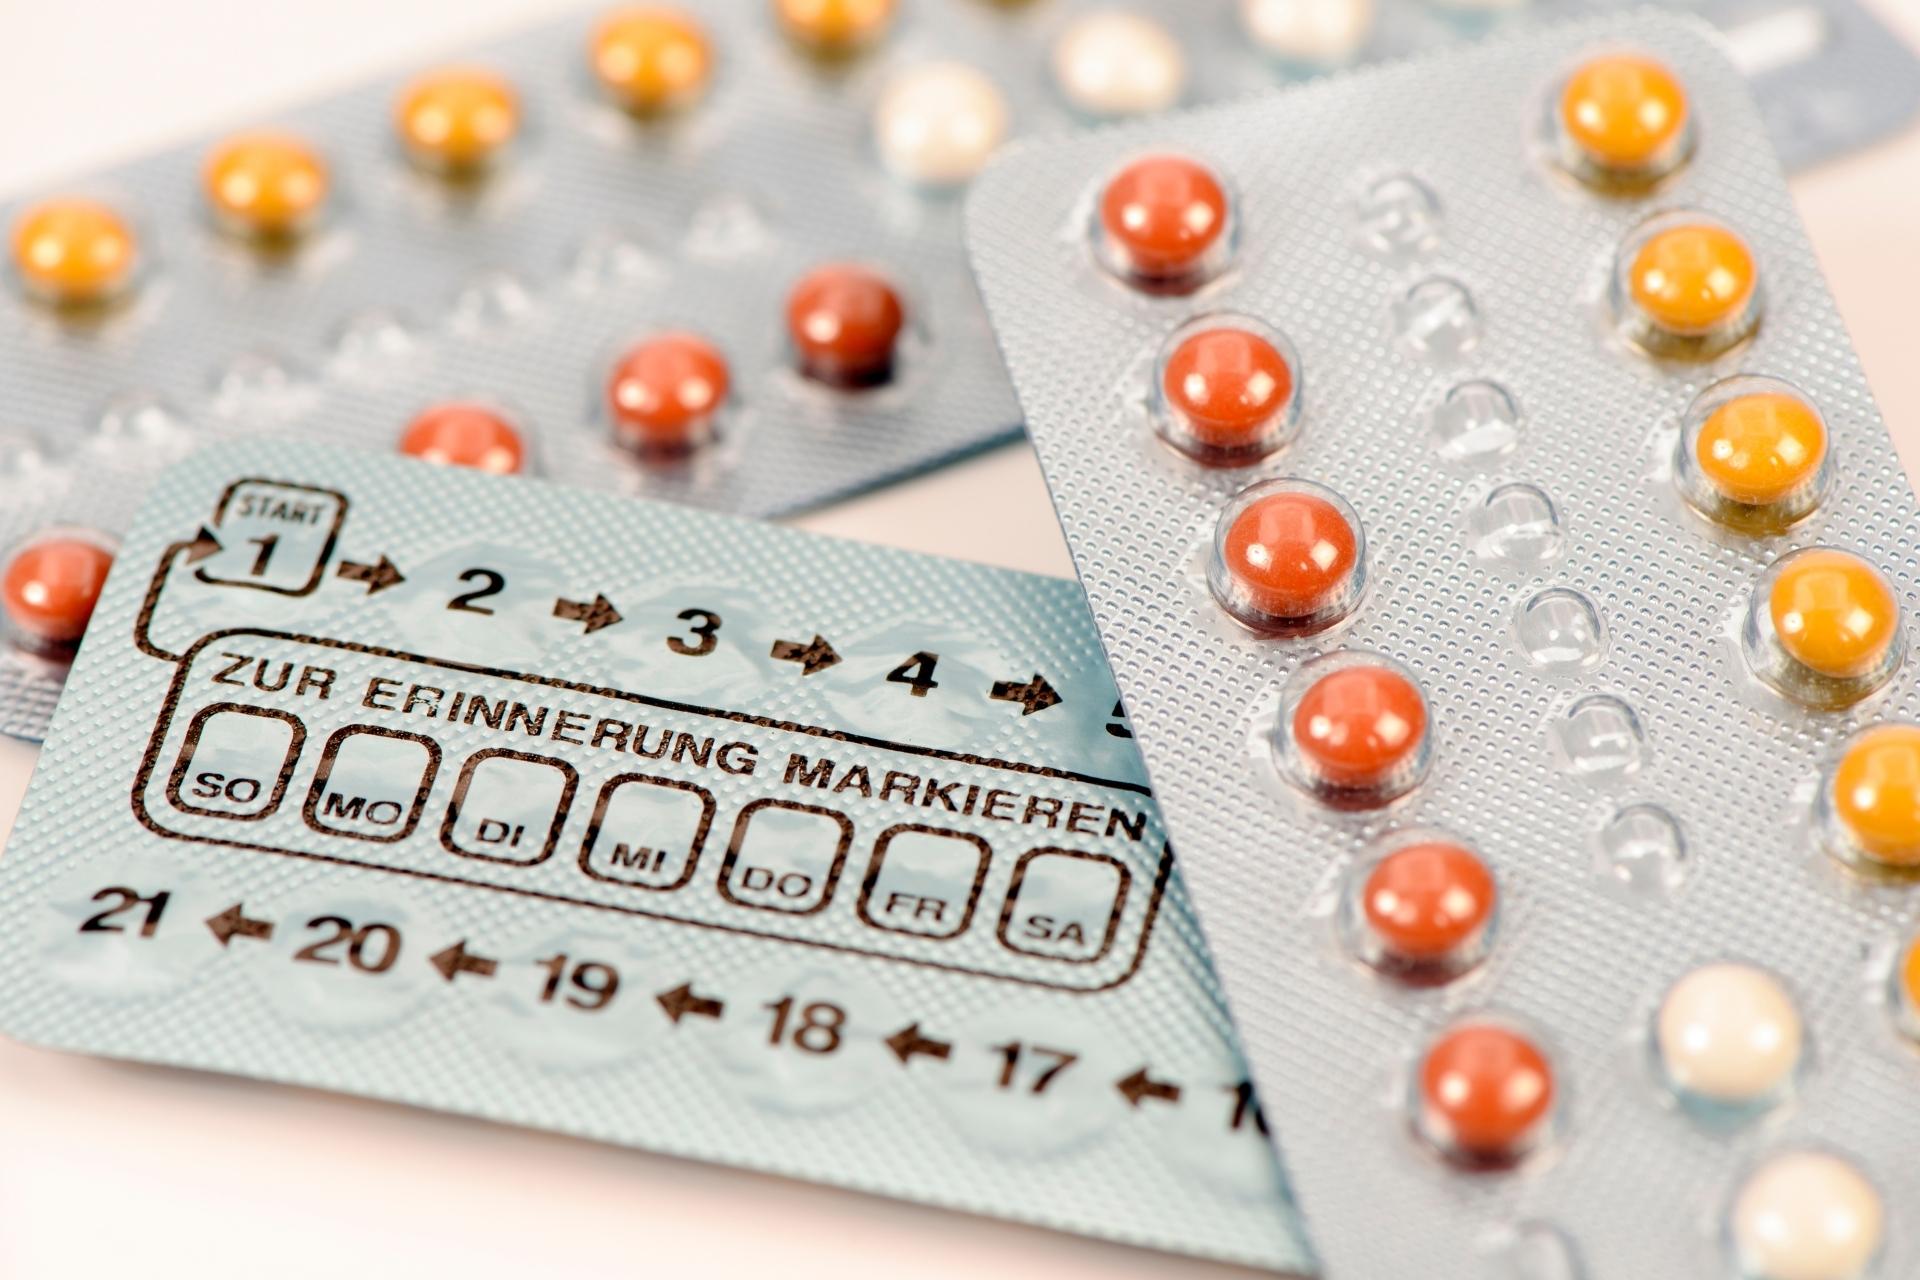 Pillola anticoncezionale: caratteristiche e rimborsabilità 